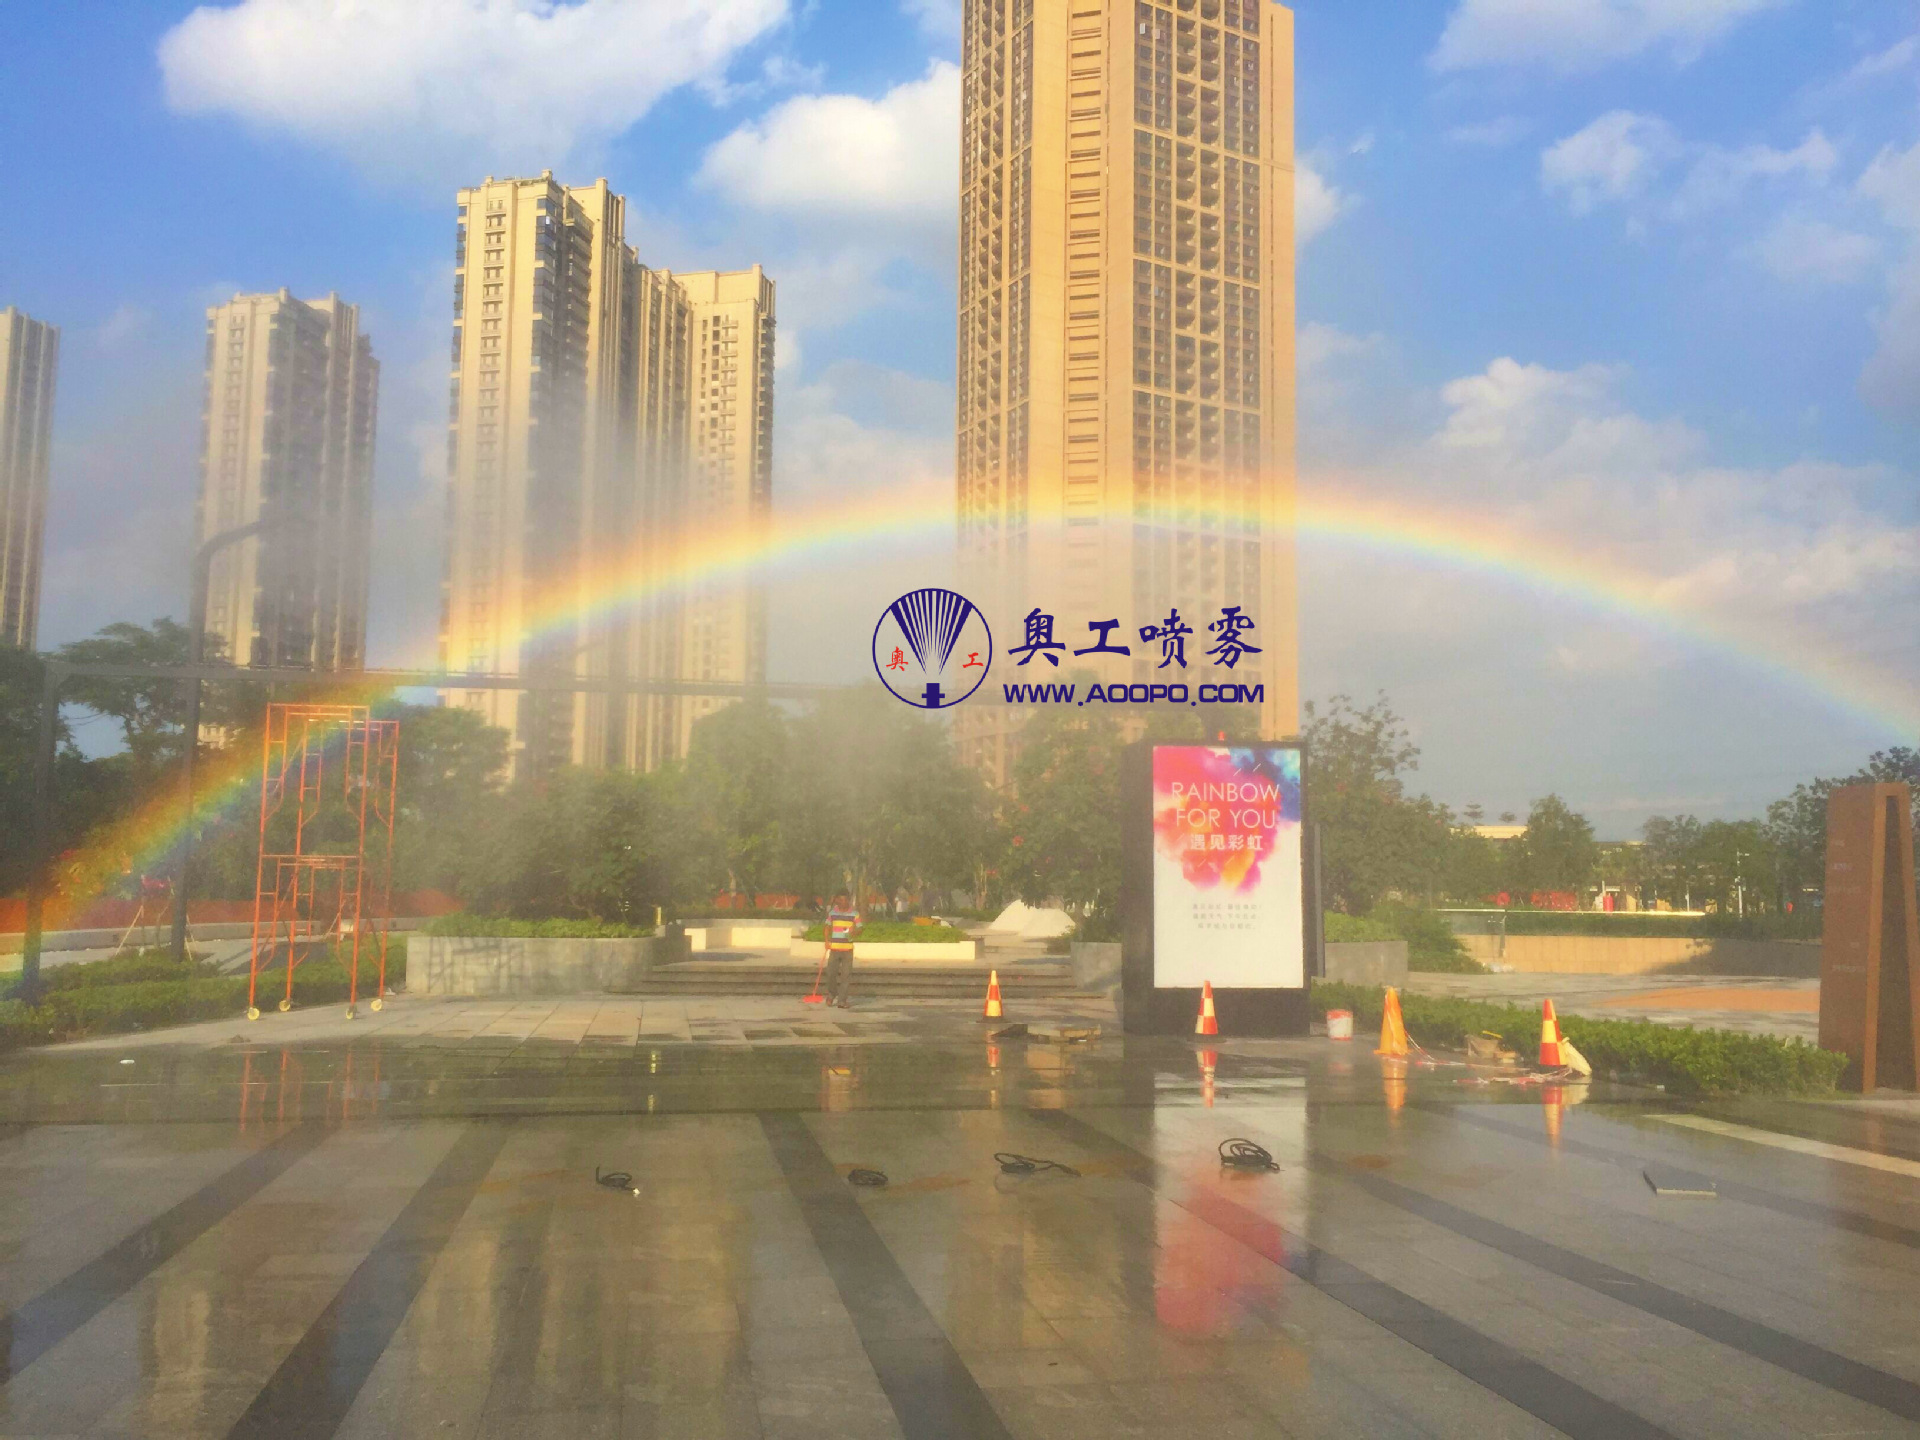 其他游艺设施 人造彩虹 上海人造彩虹系统彩虹景观 景区引流1